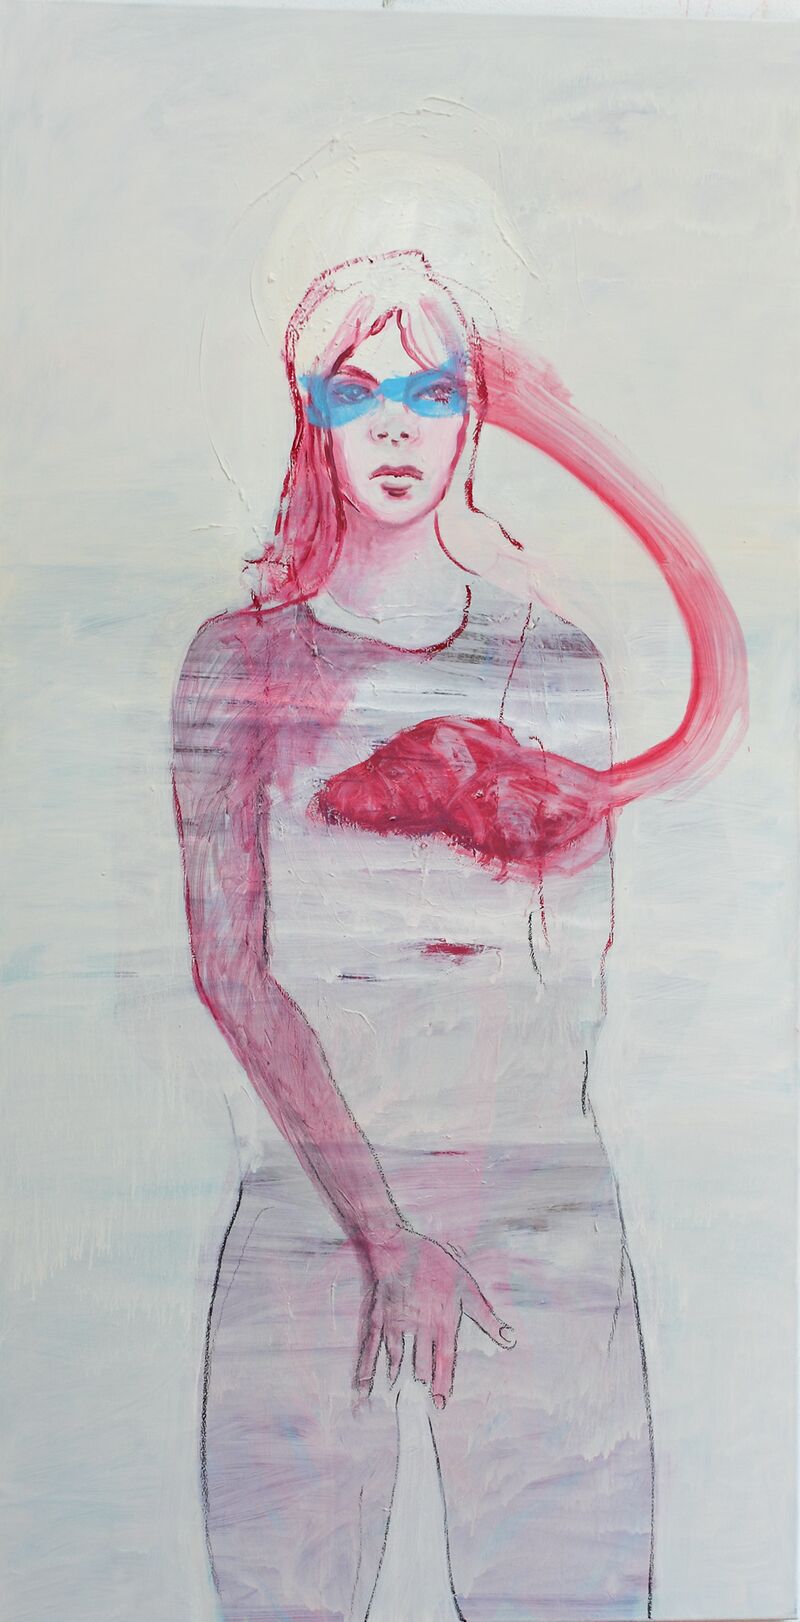 Intuition - a Paint by Eva Kunze